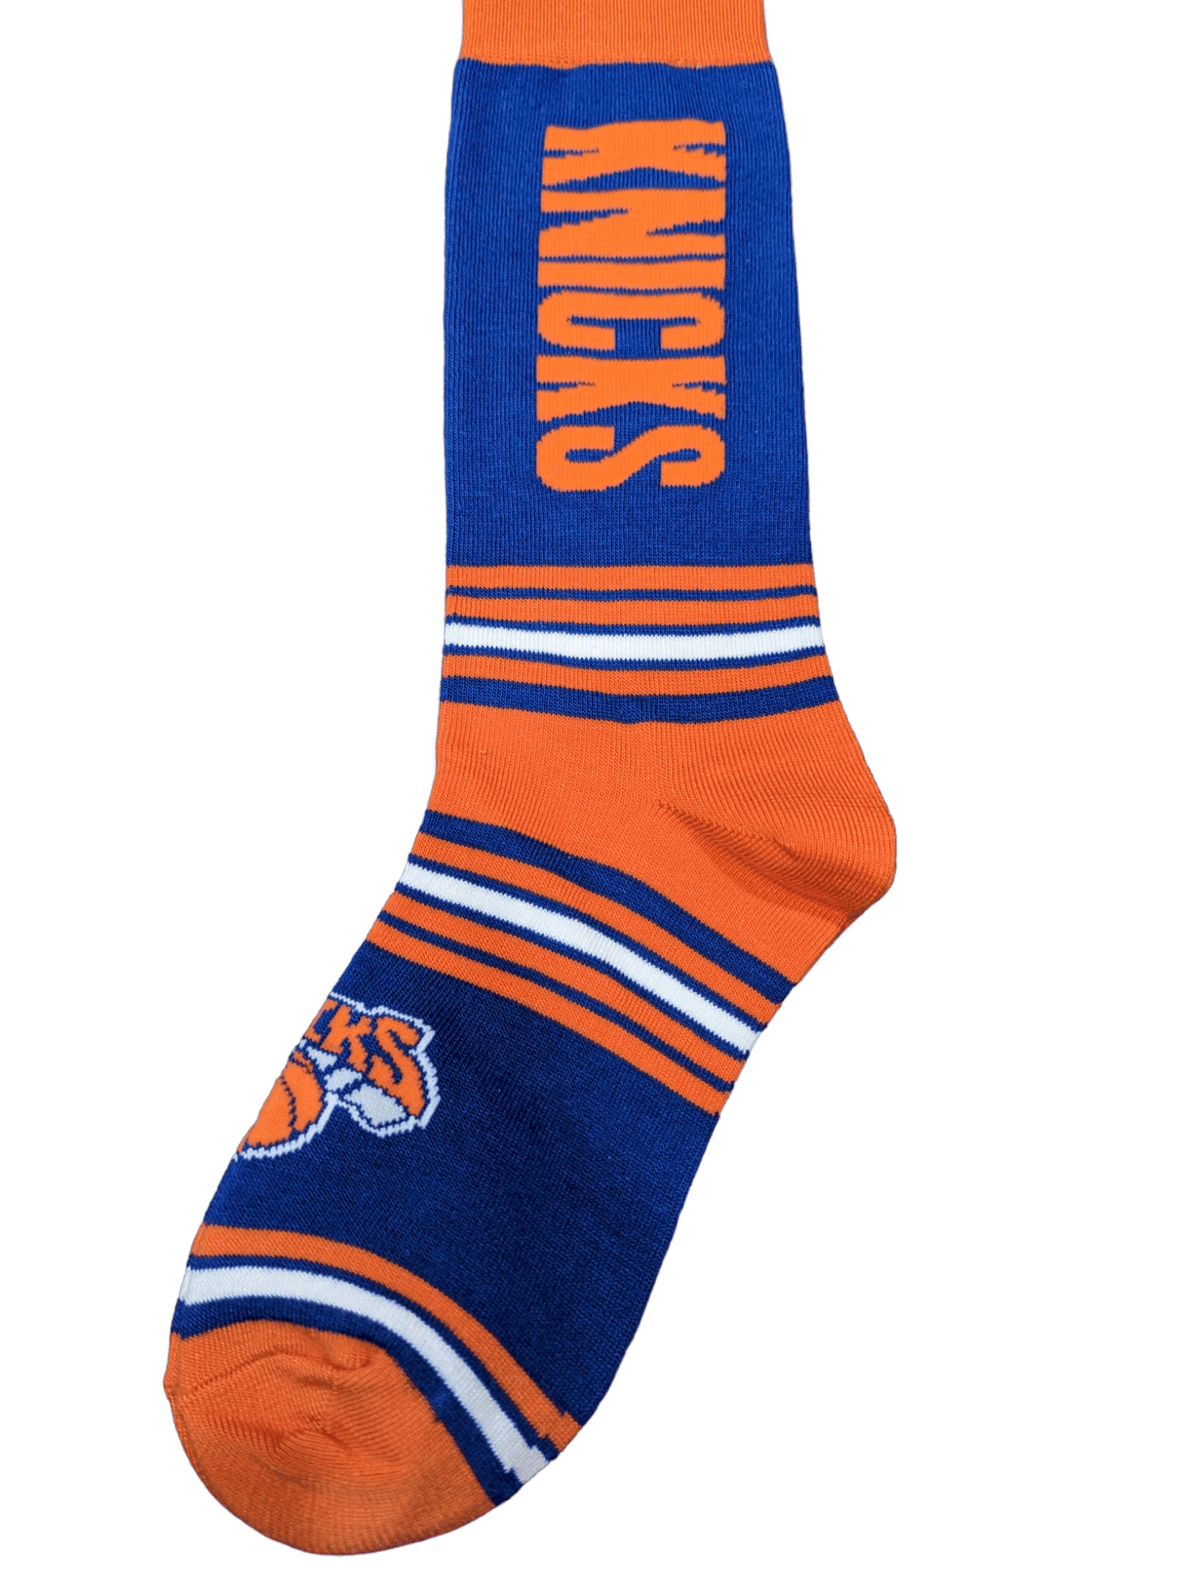 For Bare Feet Socks New York Knicks Go Team Socks